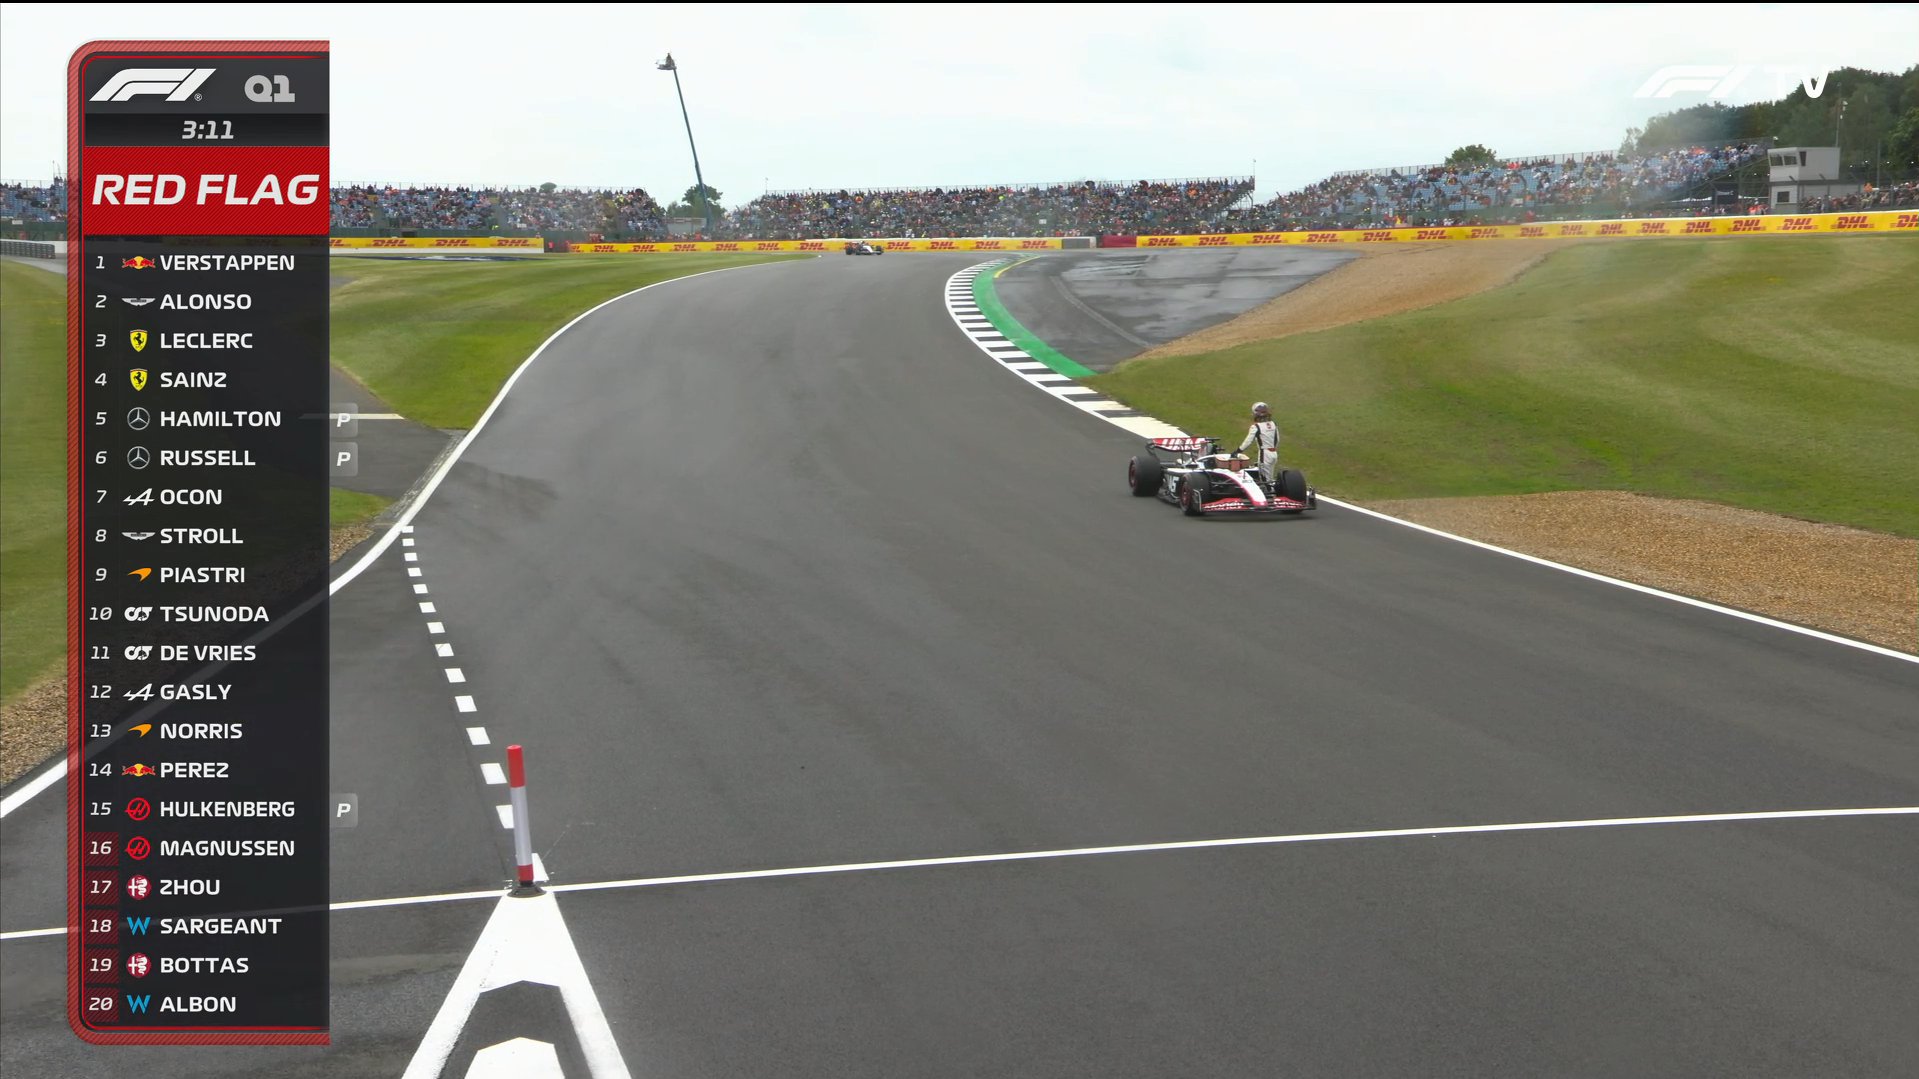 Magnussen para na pista e causa bandeira vermelha no Q1 para o GP da Inglaterra